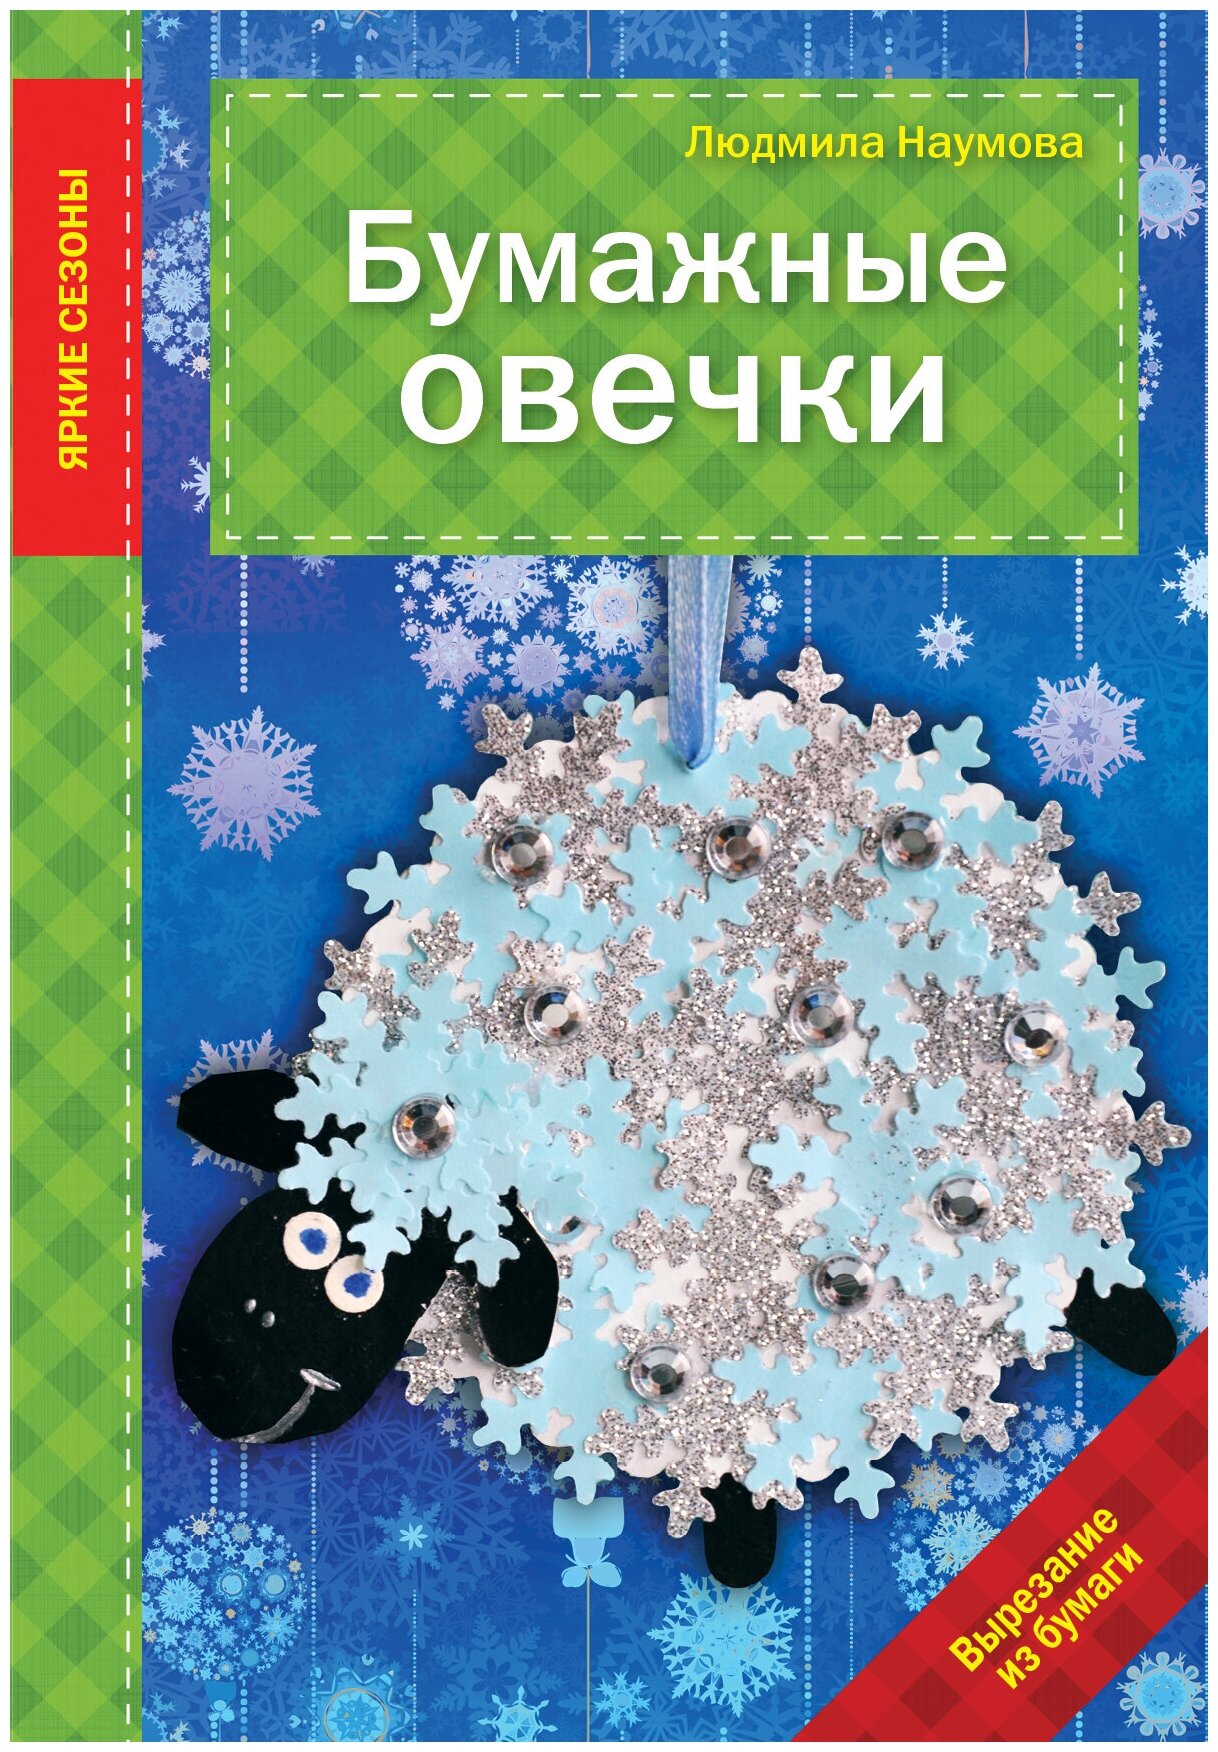 Книга: Бумажные овечки / Людмила Наумова